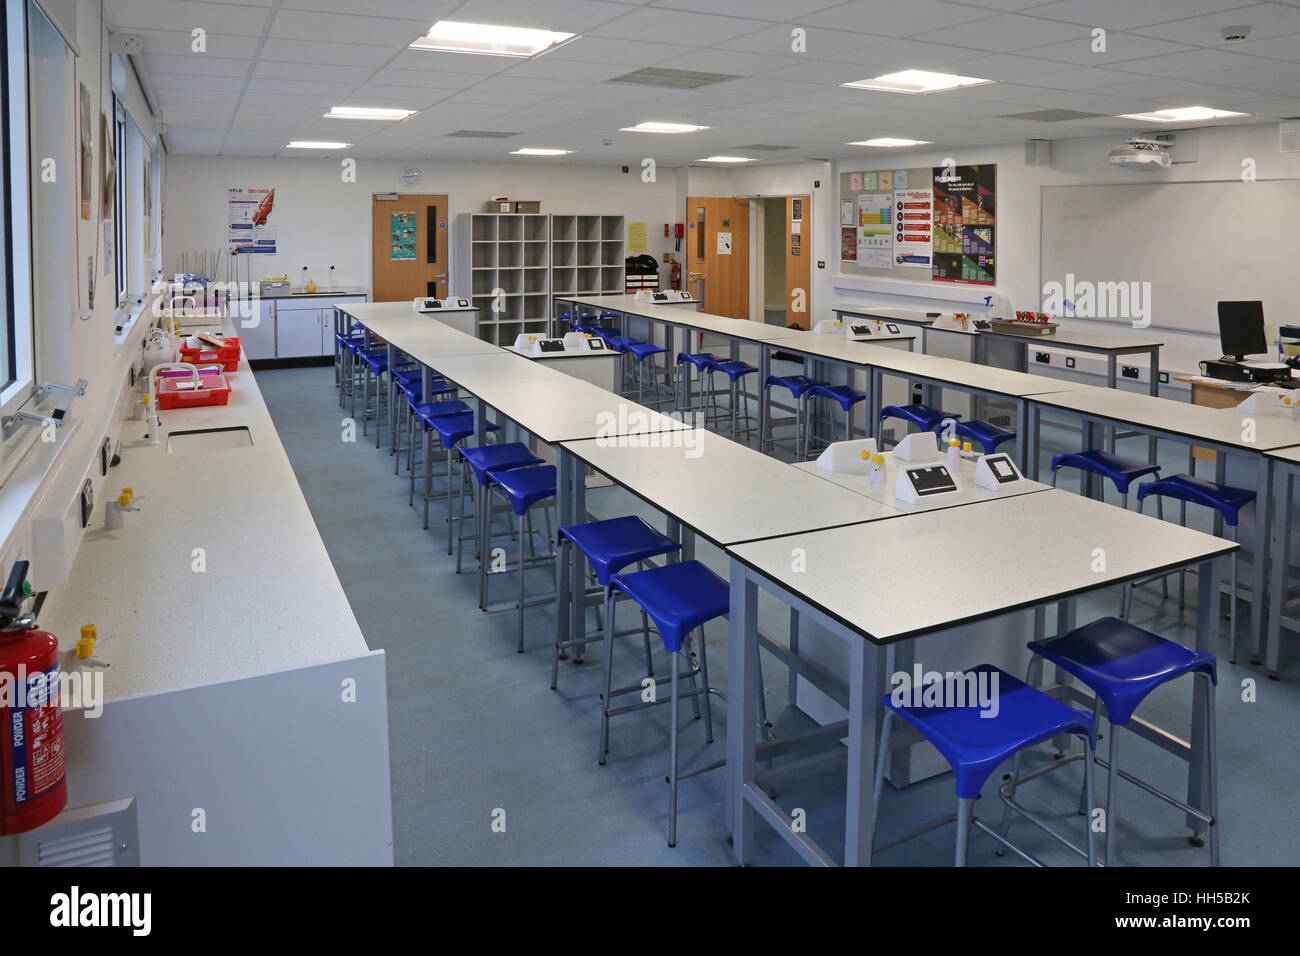 Science Klassenzimmer in einer neuen britischen Sekundarschule. Zeigt Laborbänke, Hocker und wissenschaftliche Geräte. Leer, keine Pupillen. Stockfoto